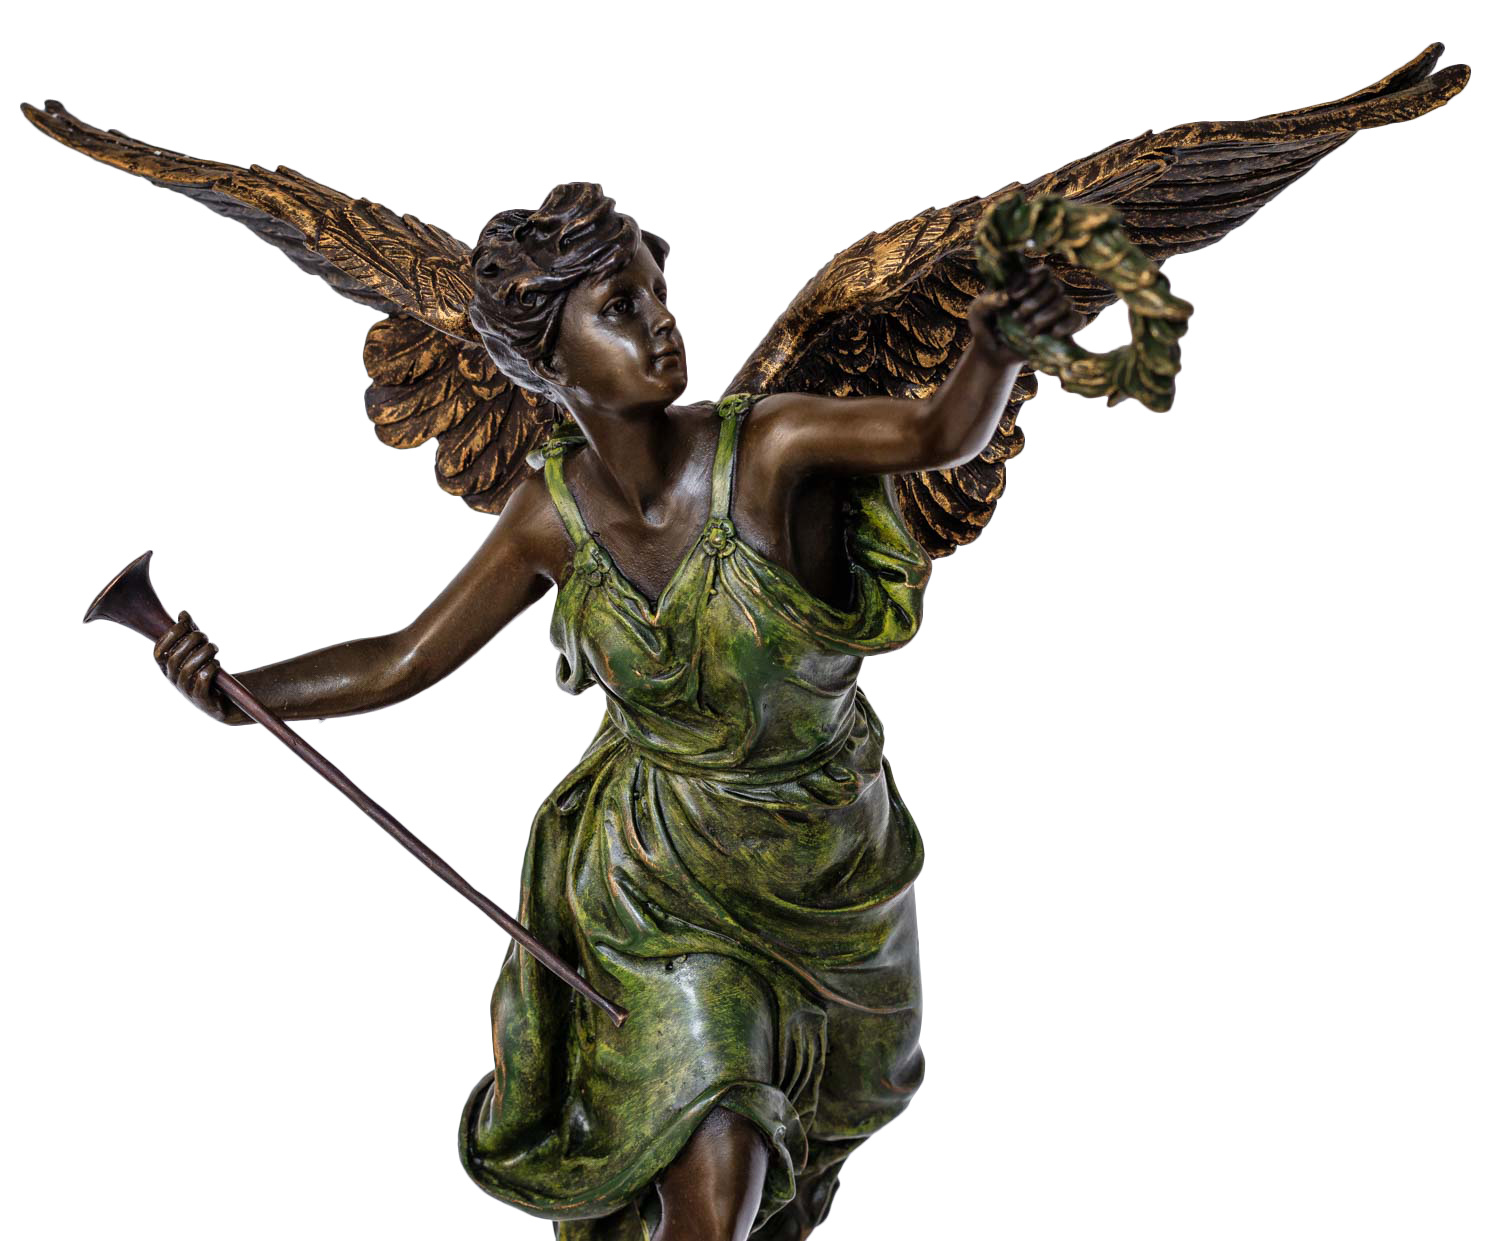 Bronzeskulptur Victory Victoria Antik-Stil Bronze Statue Berlin Siegessäule 37cm 